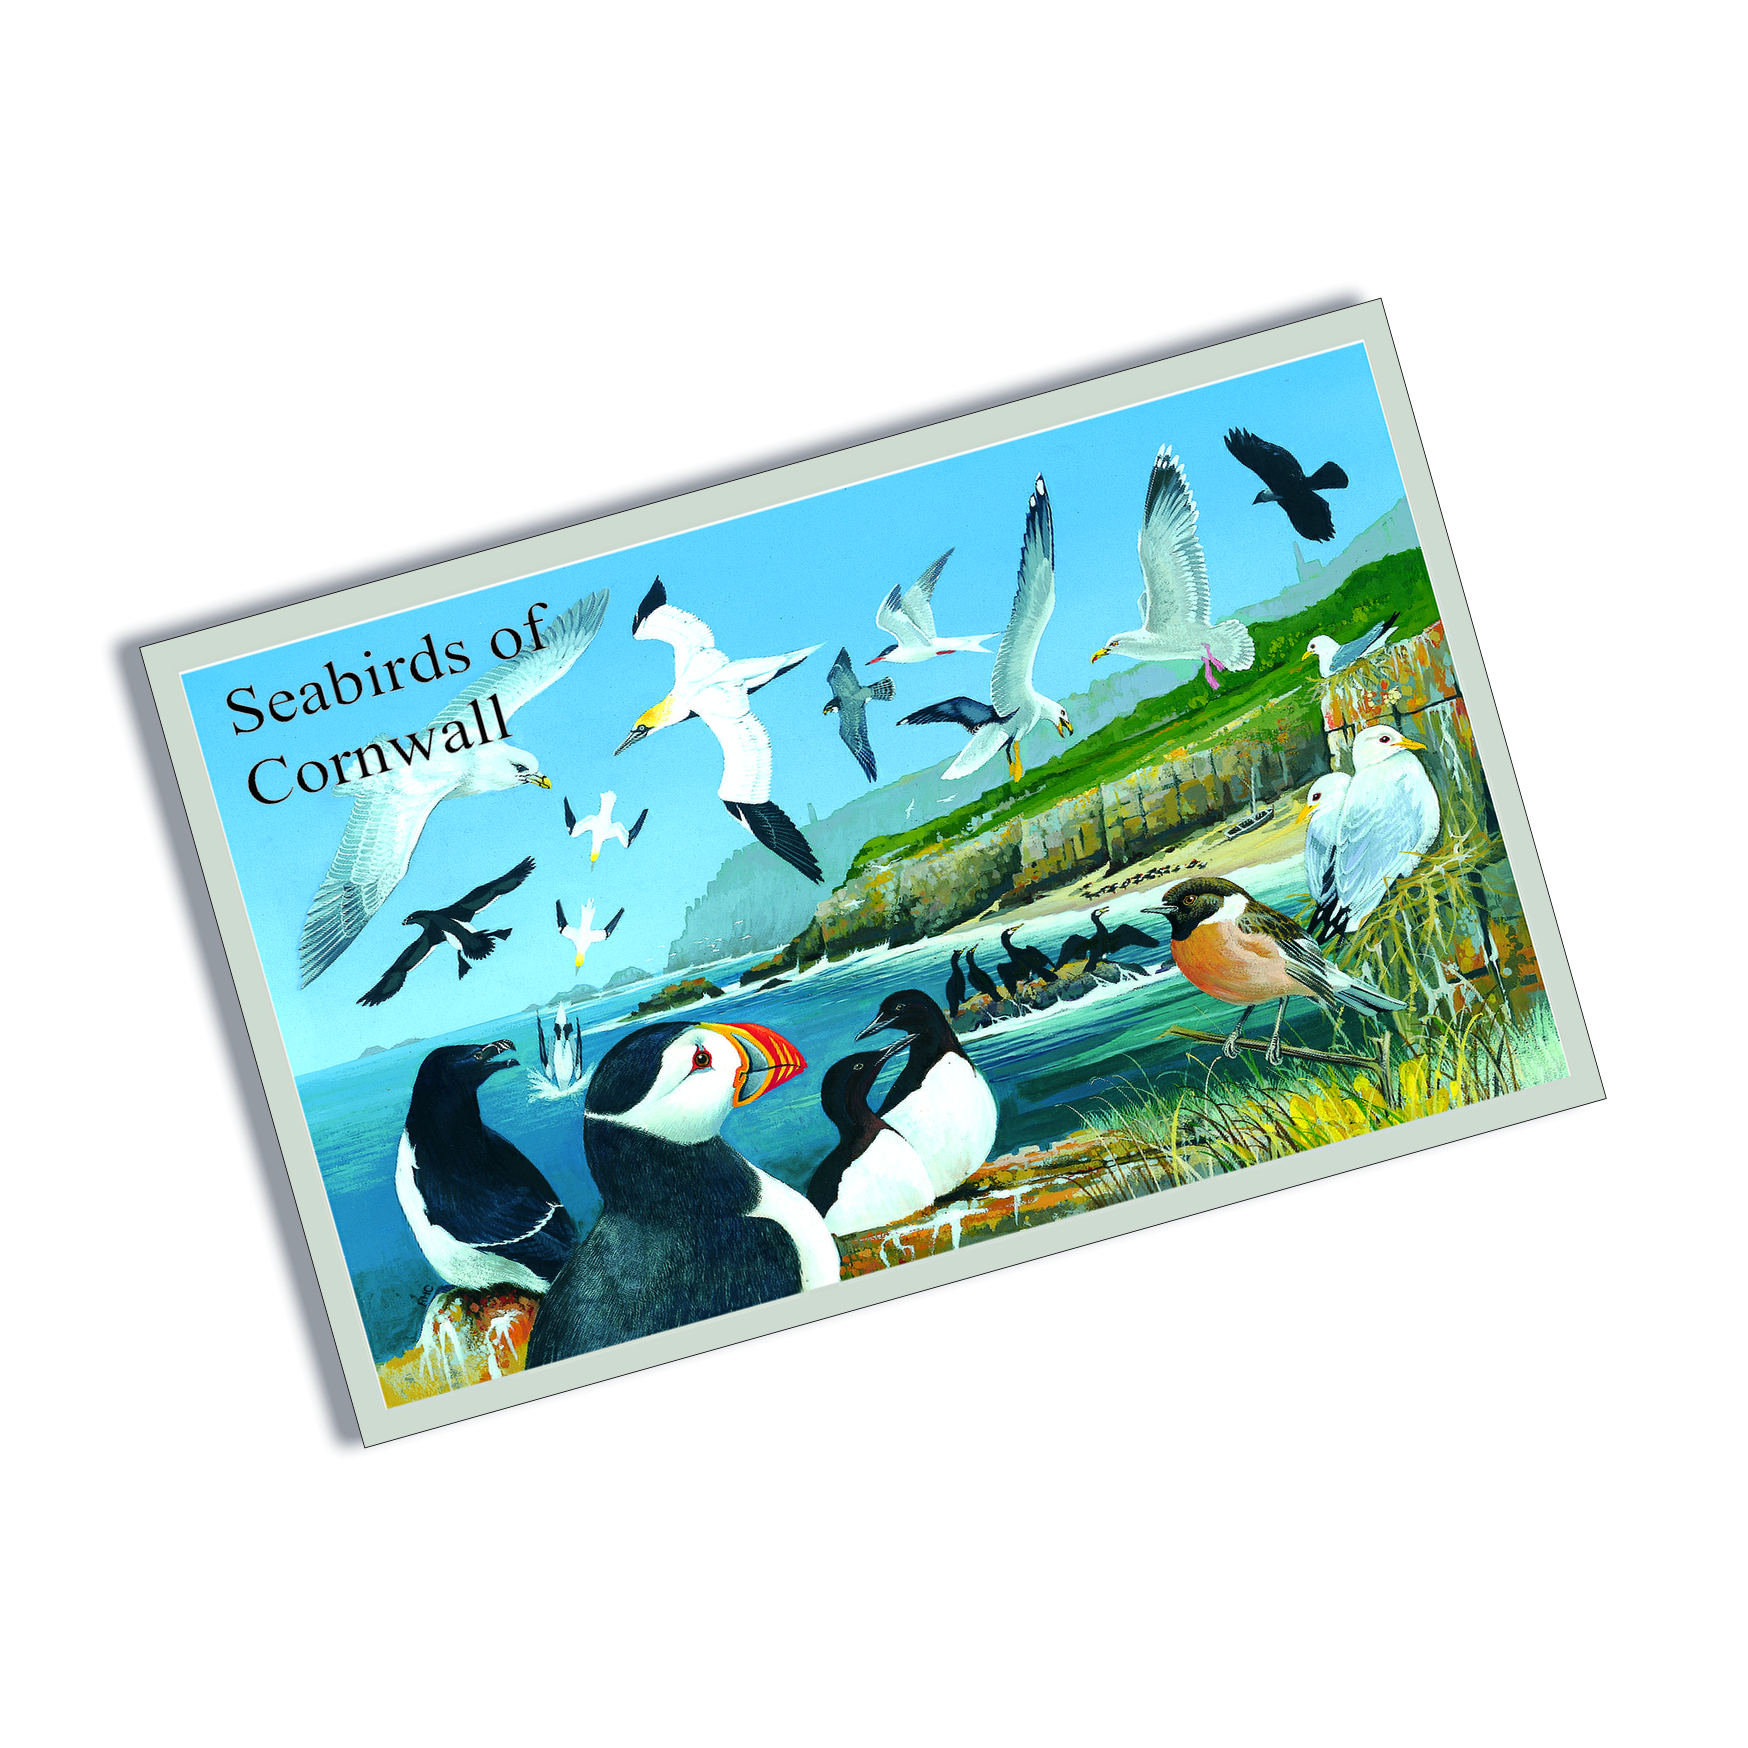 Lands End Cornwall Tin aimant de réfrigérateur Cornish souvenir carte postale 7.5 X 4.5 cm